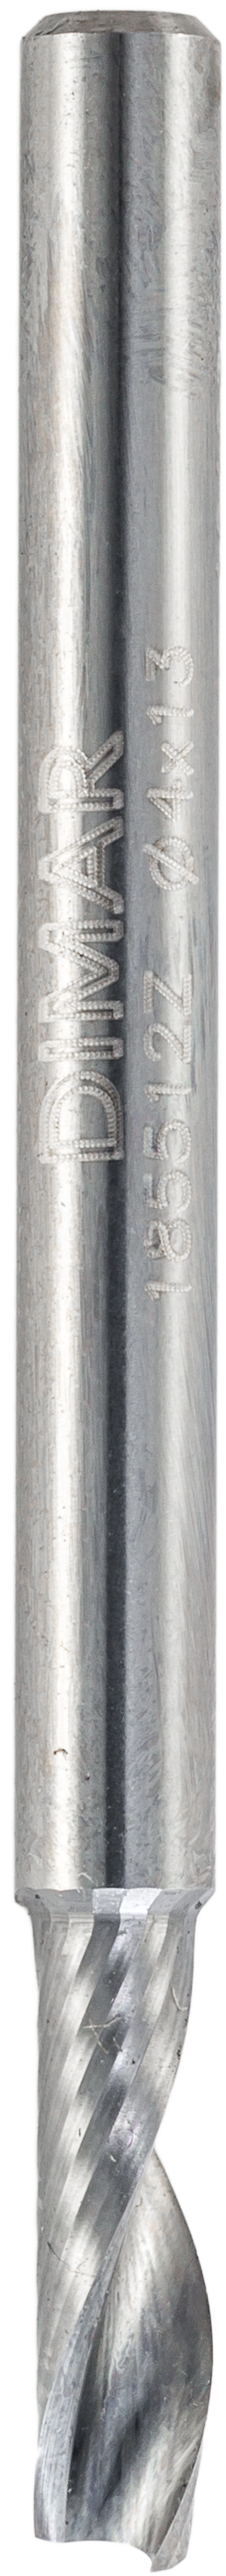 Фреза Dimar 185512Z O флейта для пластика D4x13 L50 стружка ВВЕРХ хвостовик 4 зеркальная полировка